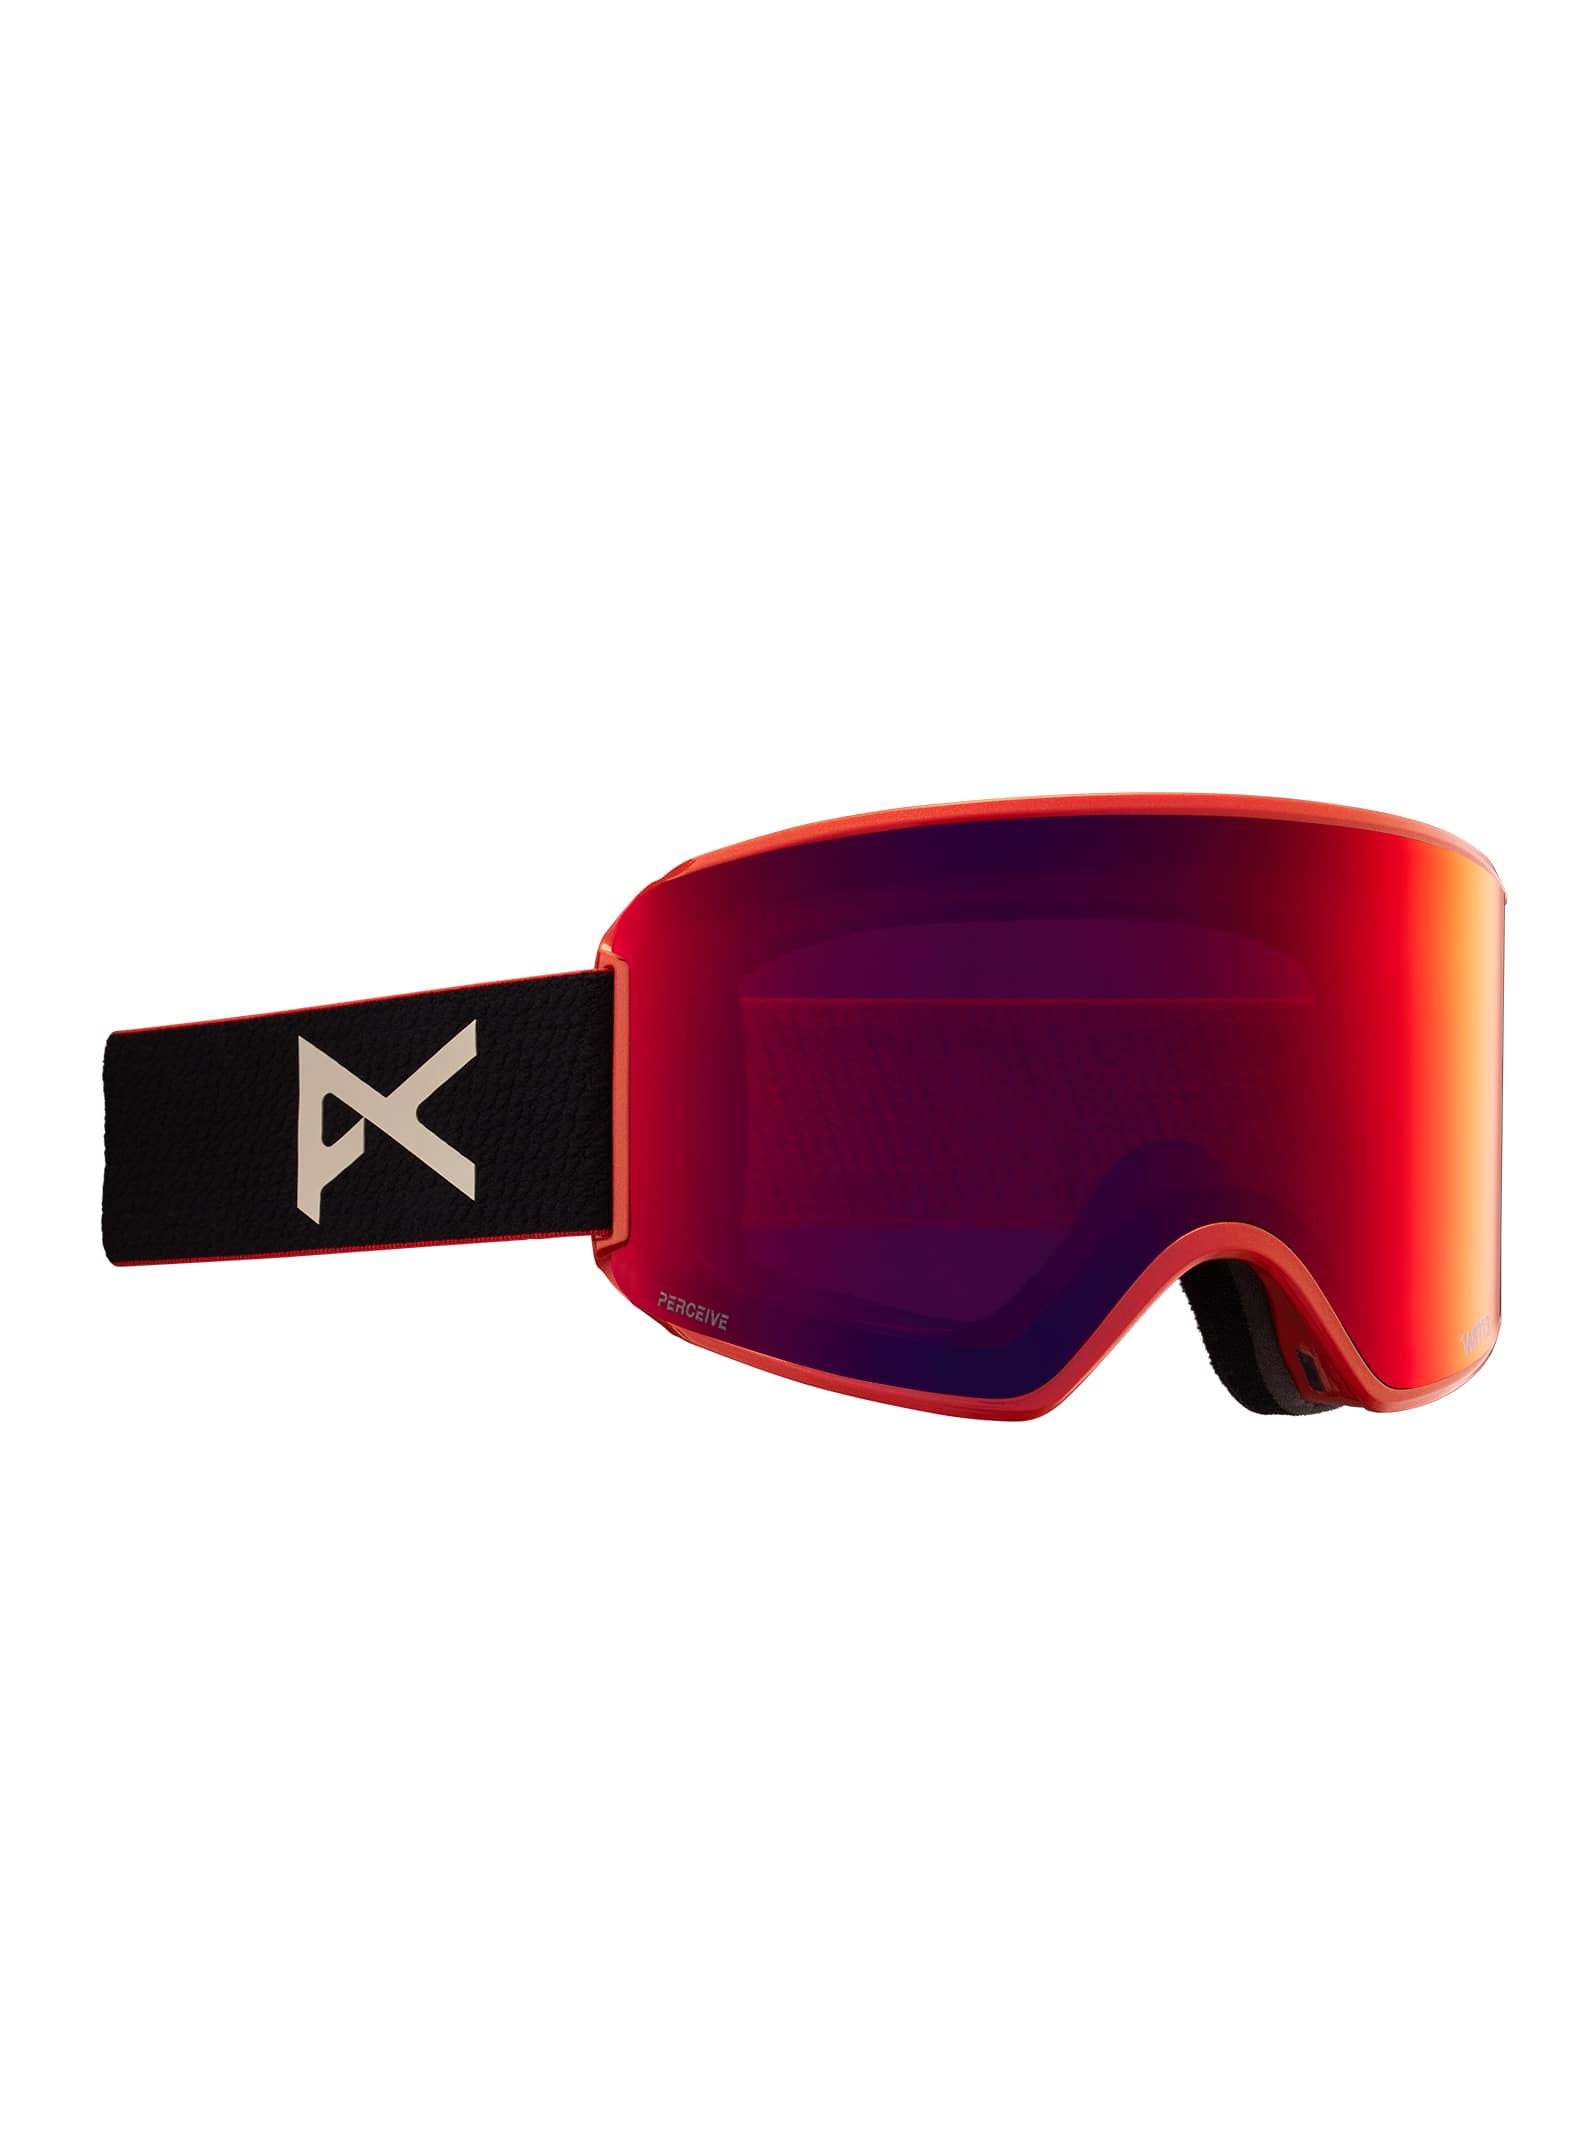 Ski- und Snowboardbrillen und Brillengläser für Damen | Ski- und  Snowboardbrillen für Damen | Anon Optics DE